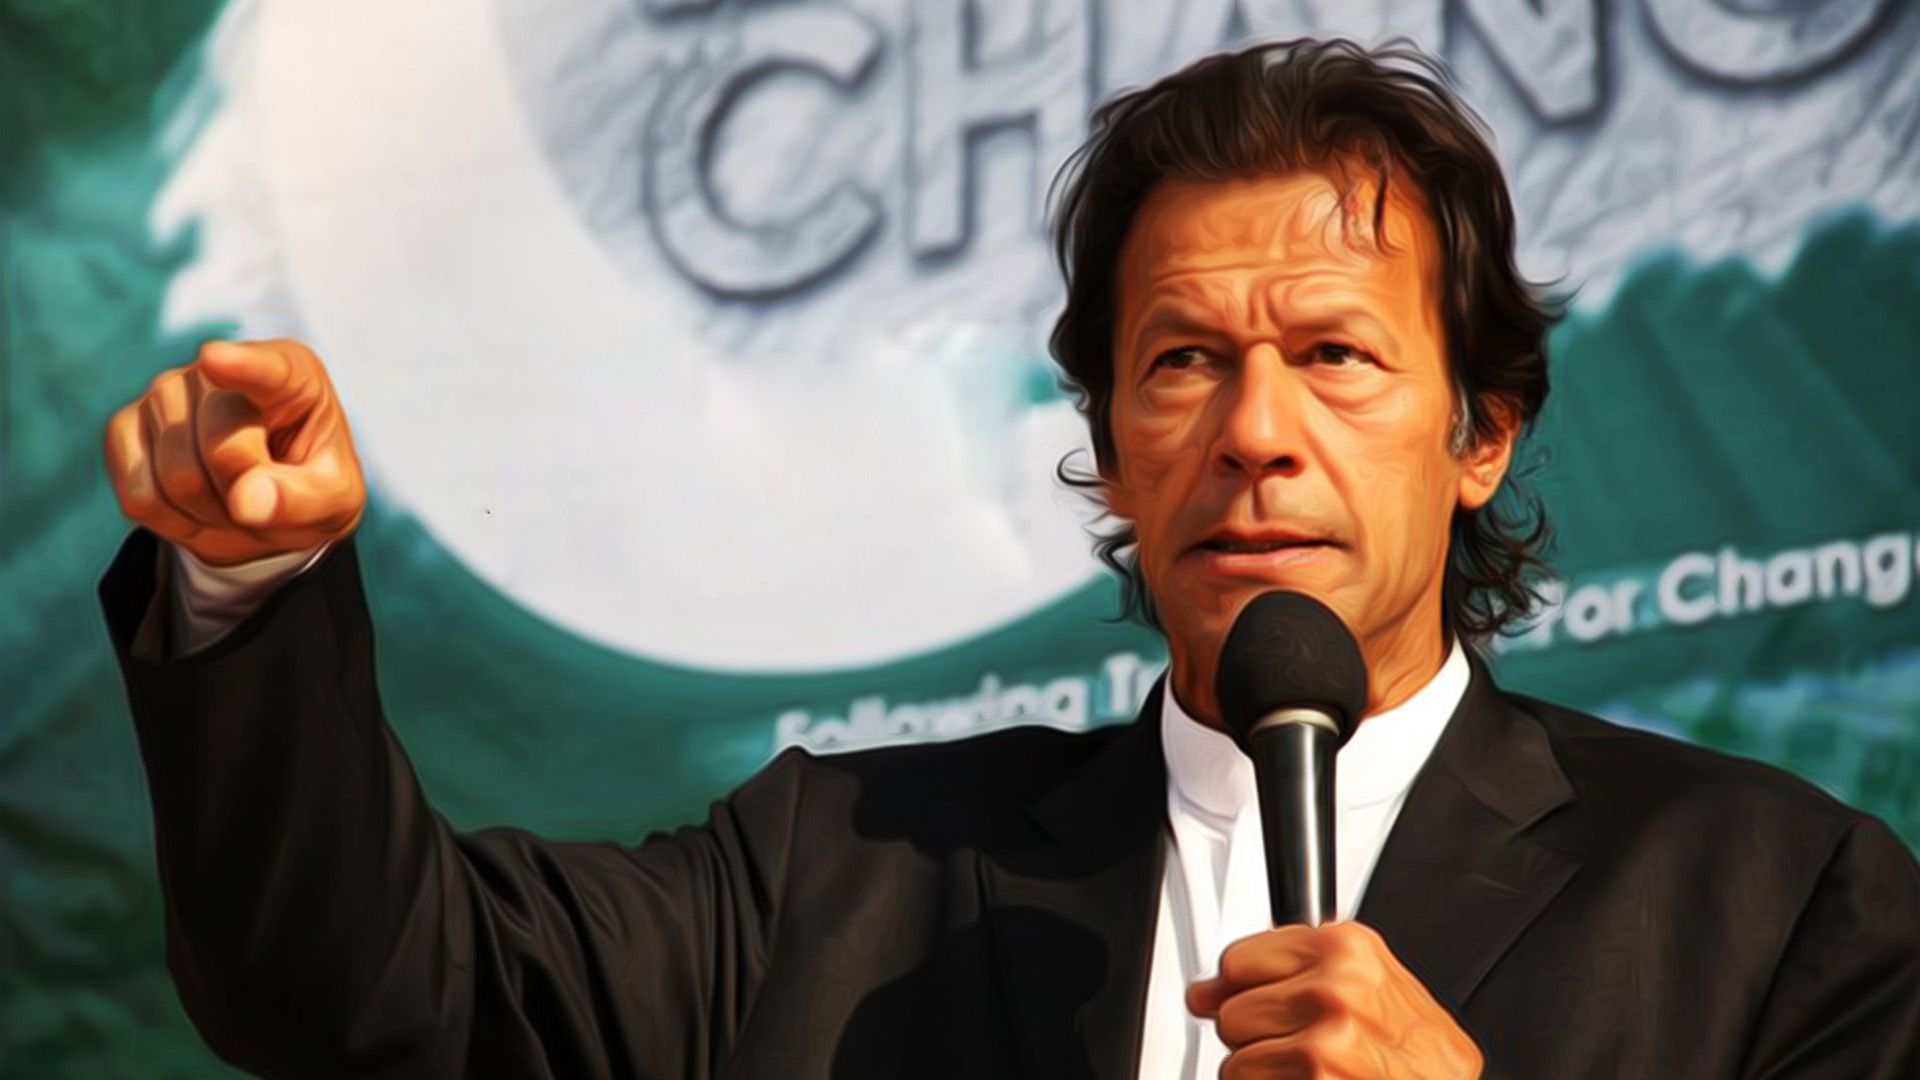 Imran Khan Says Economic Revival a Priority